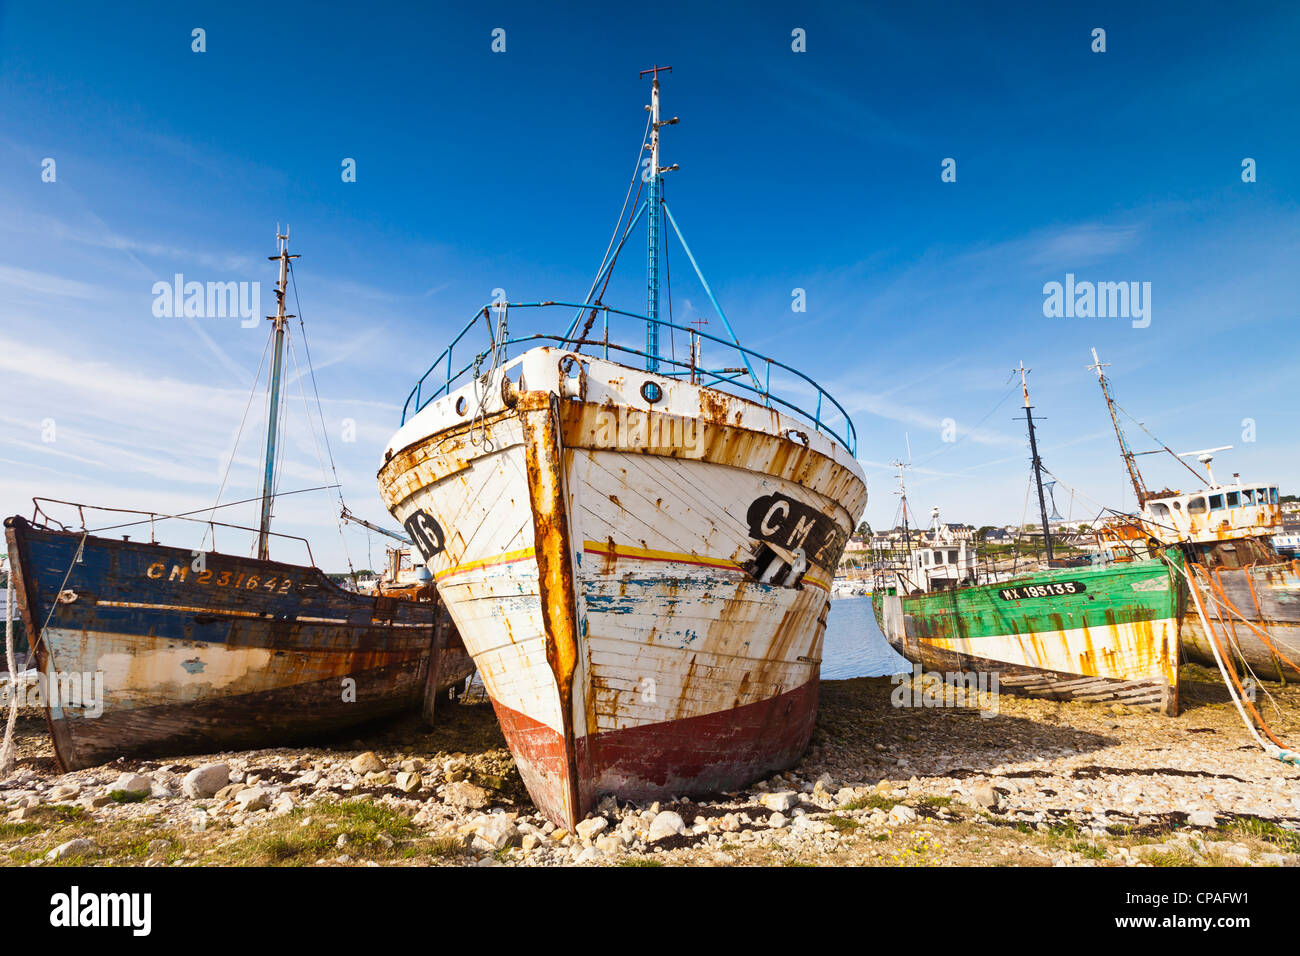 Bateaux de pêche abandonnés tiré sur une plage à Camaret-Sur-Mer, un village de vacances dans le Finistère, Bretagne, France. Banque D'Images